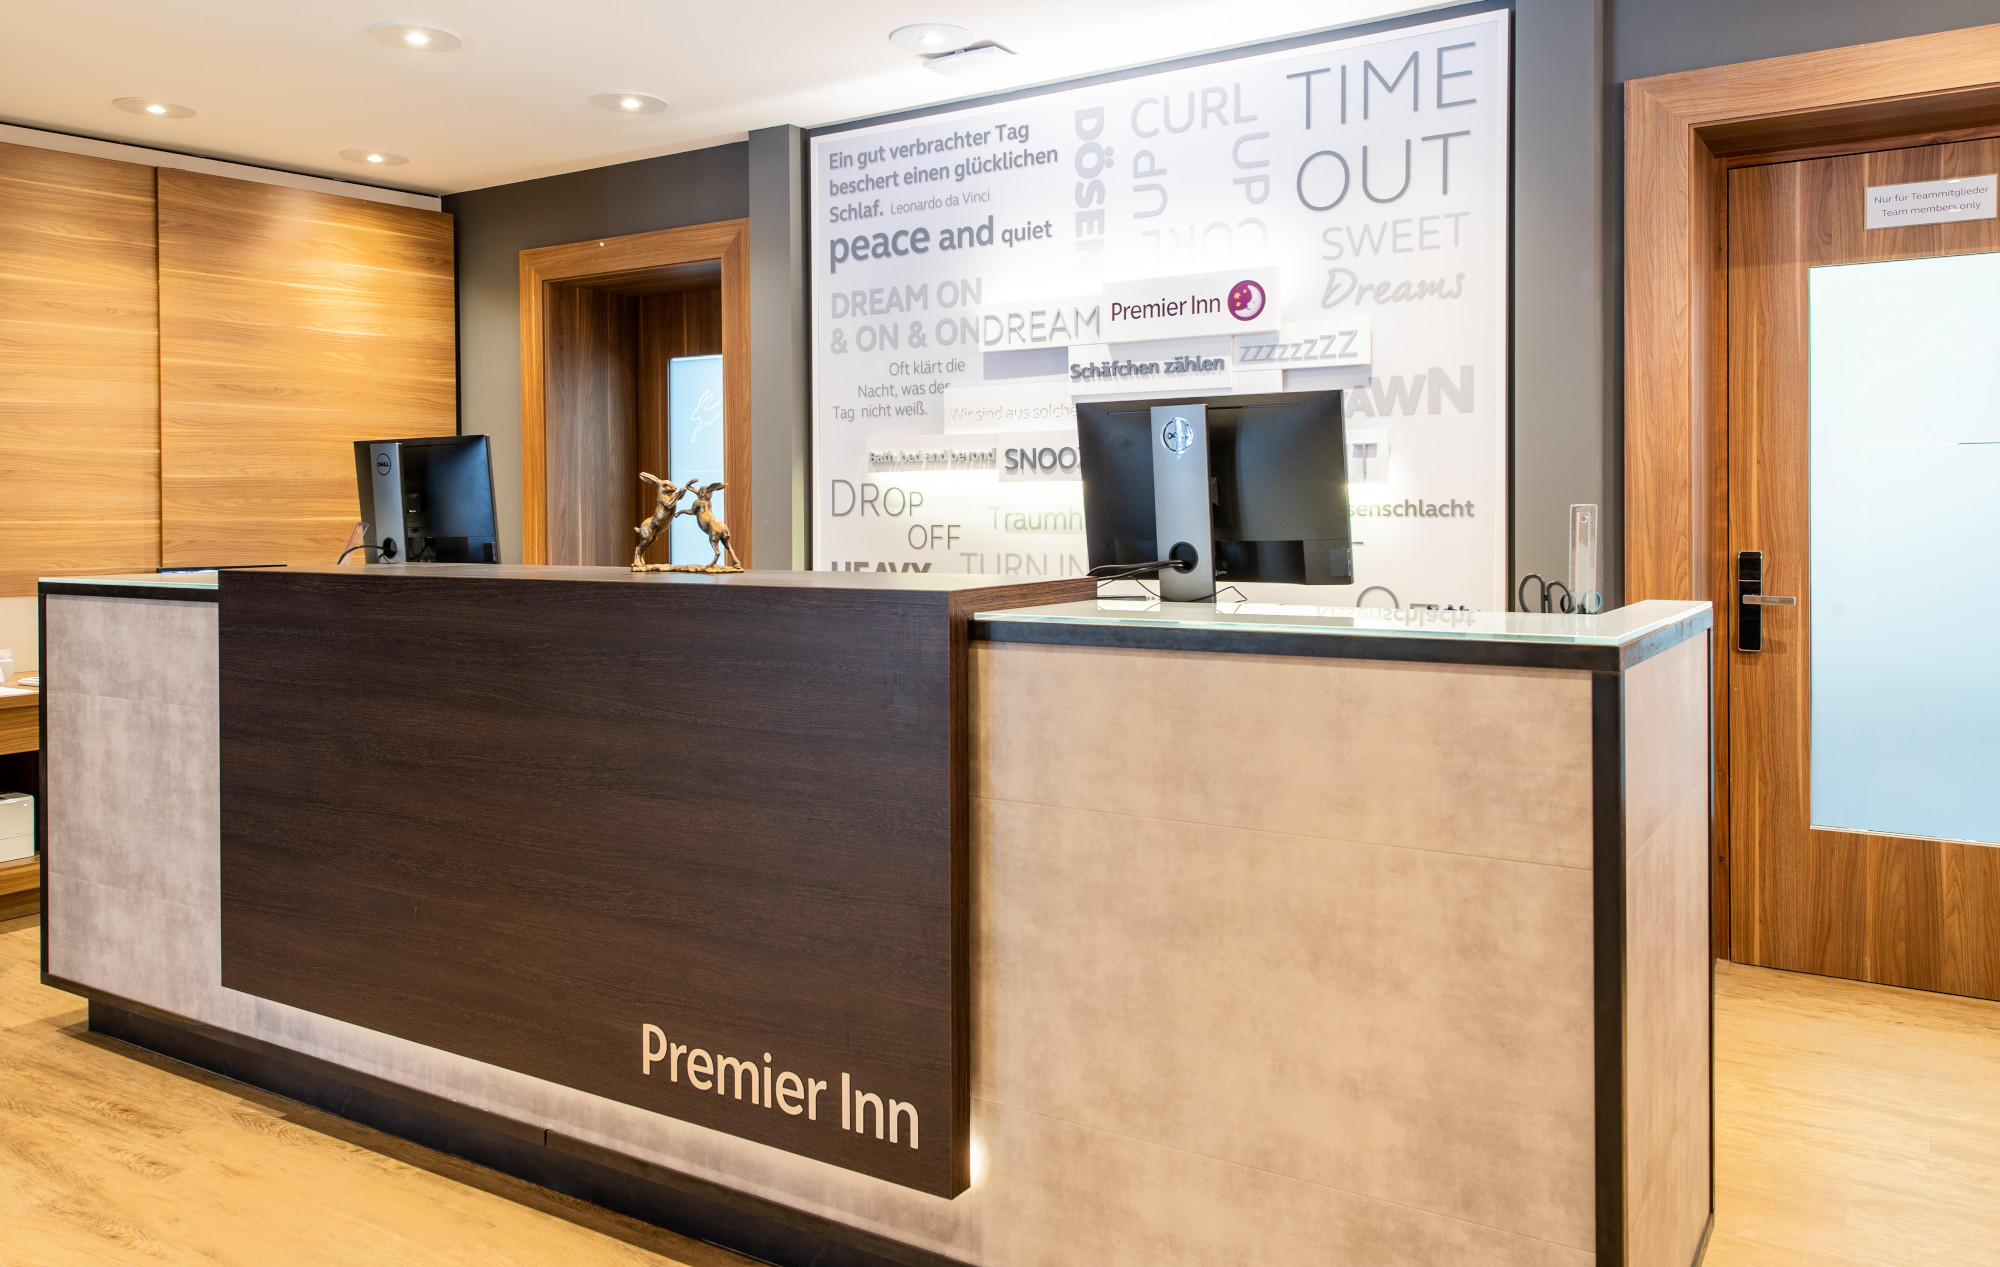 Kundenbild groß 3 Premier Inn Passau Weisser Hase hotel